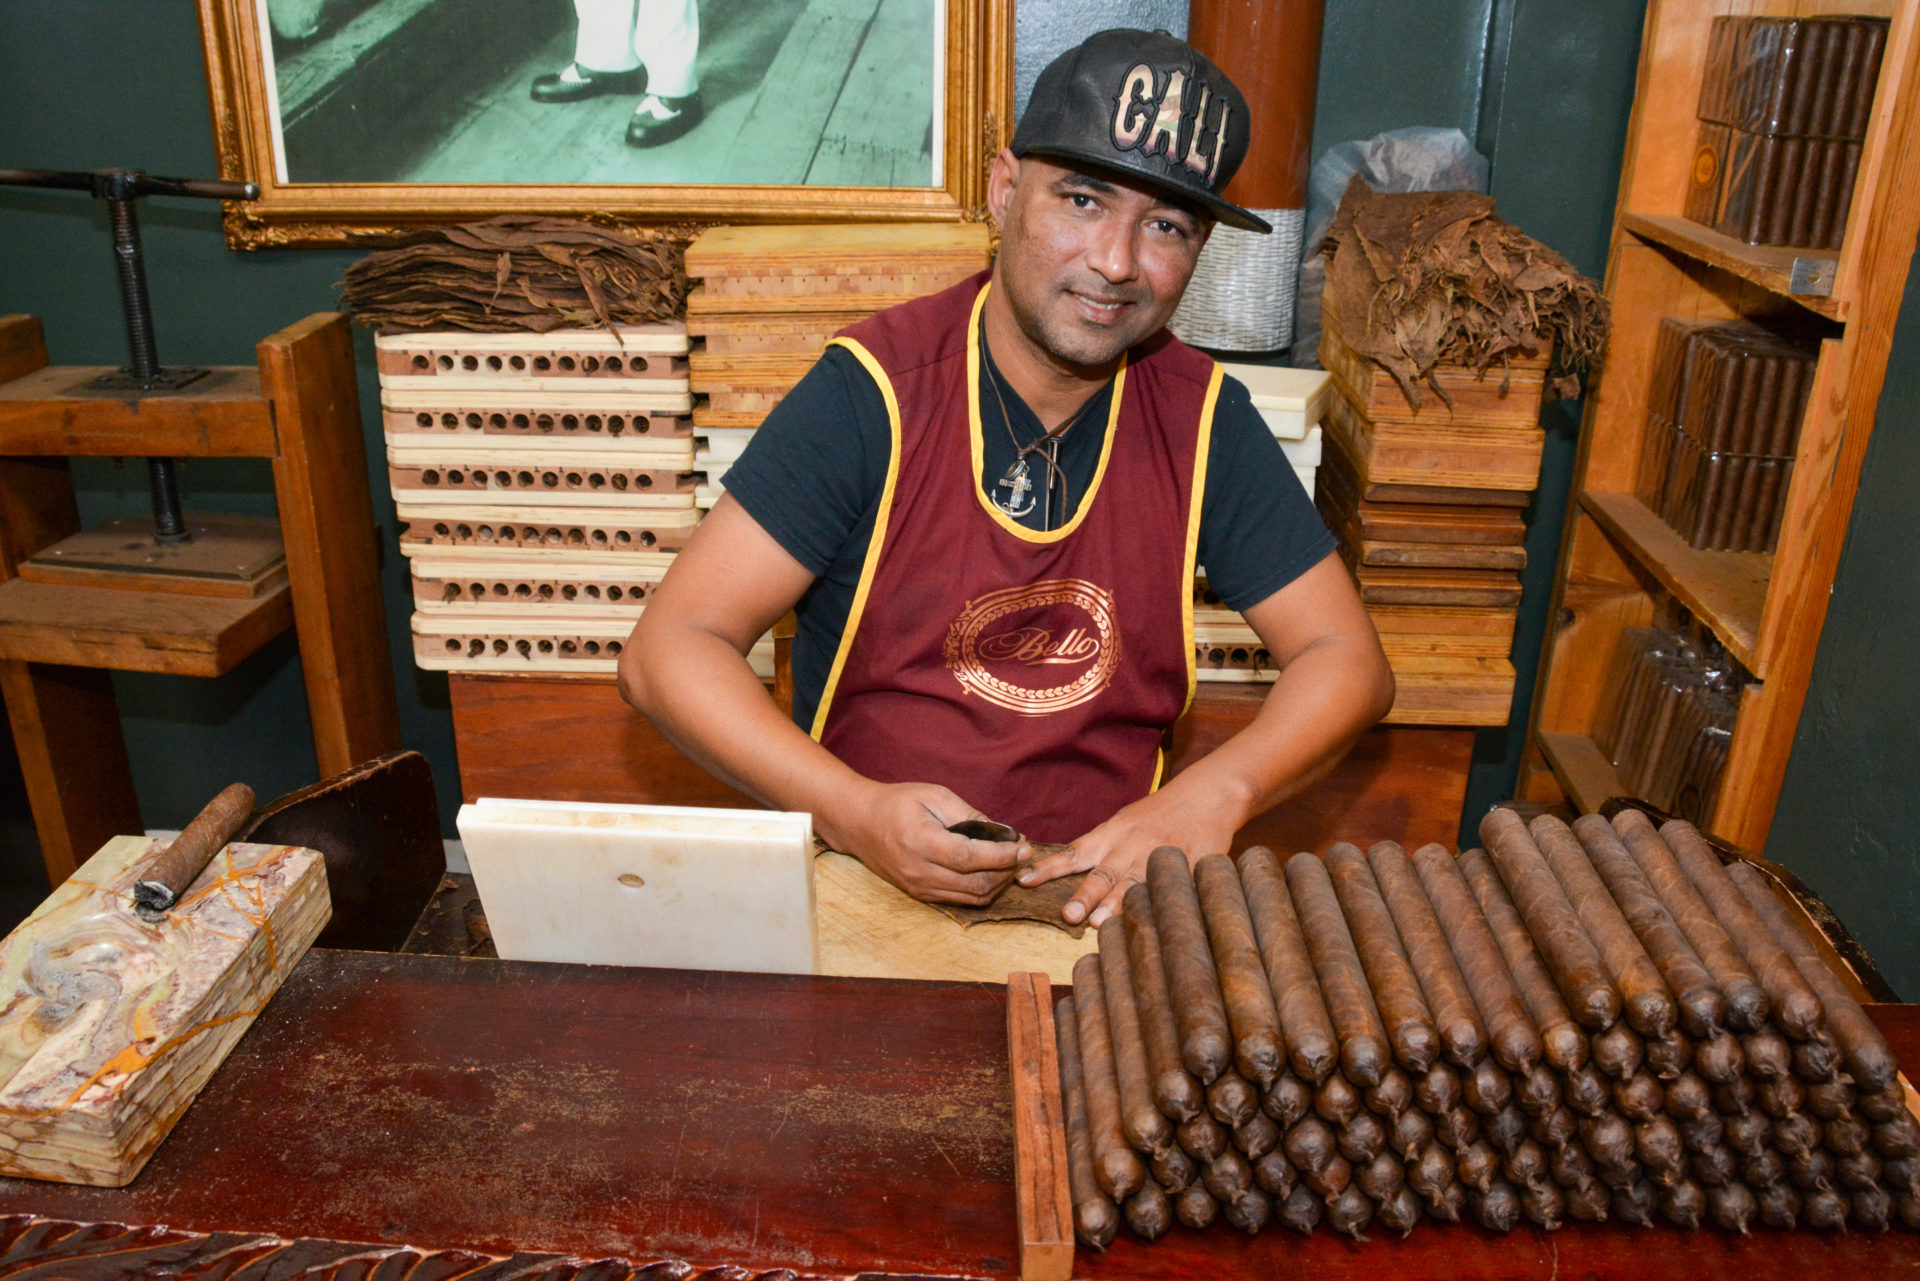 Zigarrendreher mit Baseballmütze mit dem Schriftzug Cali dreht Zigarren aus Little Havana